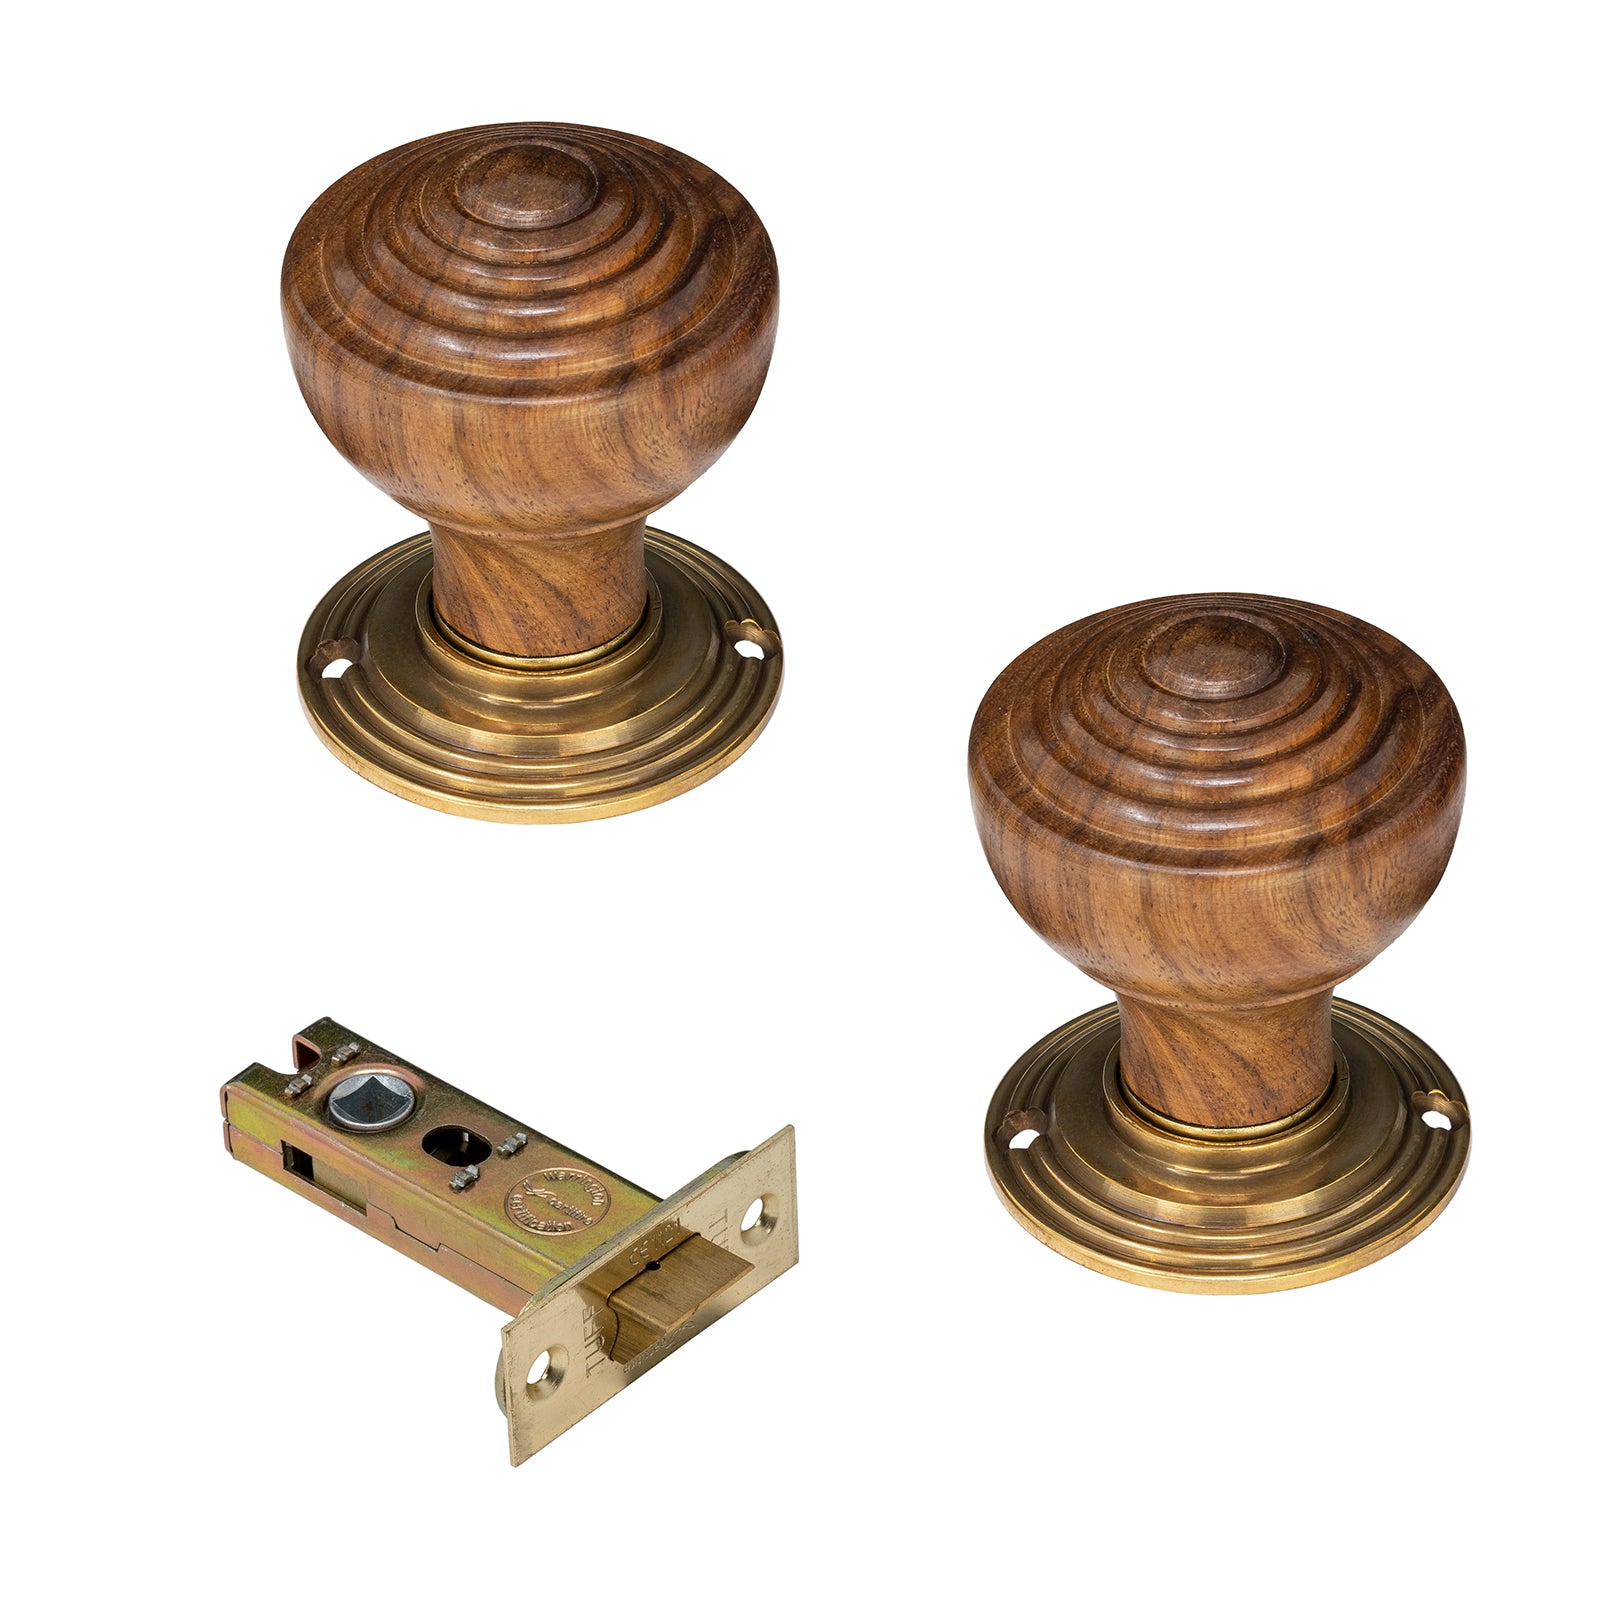 Wooden door knobs 3 inch latch set